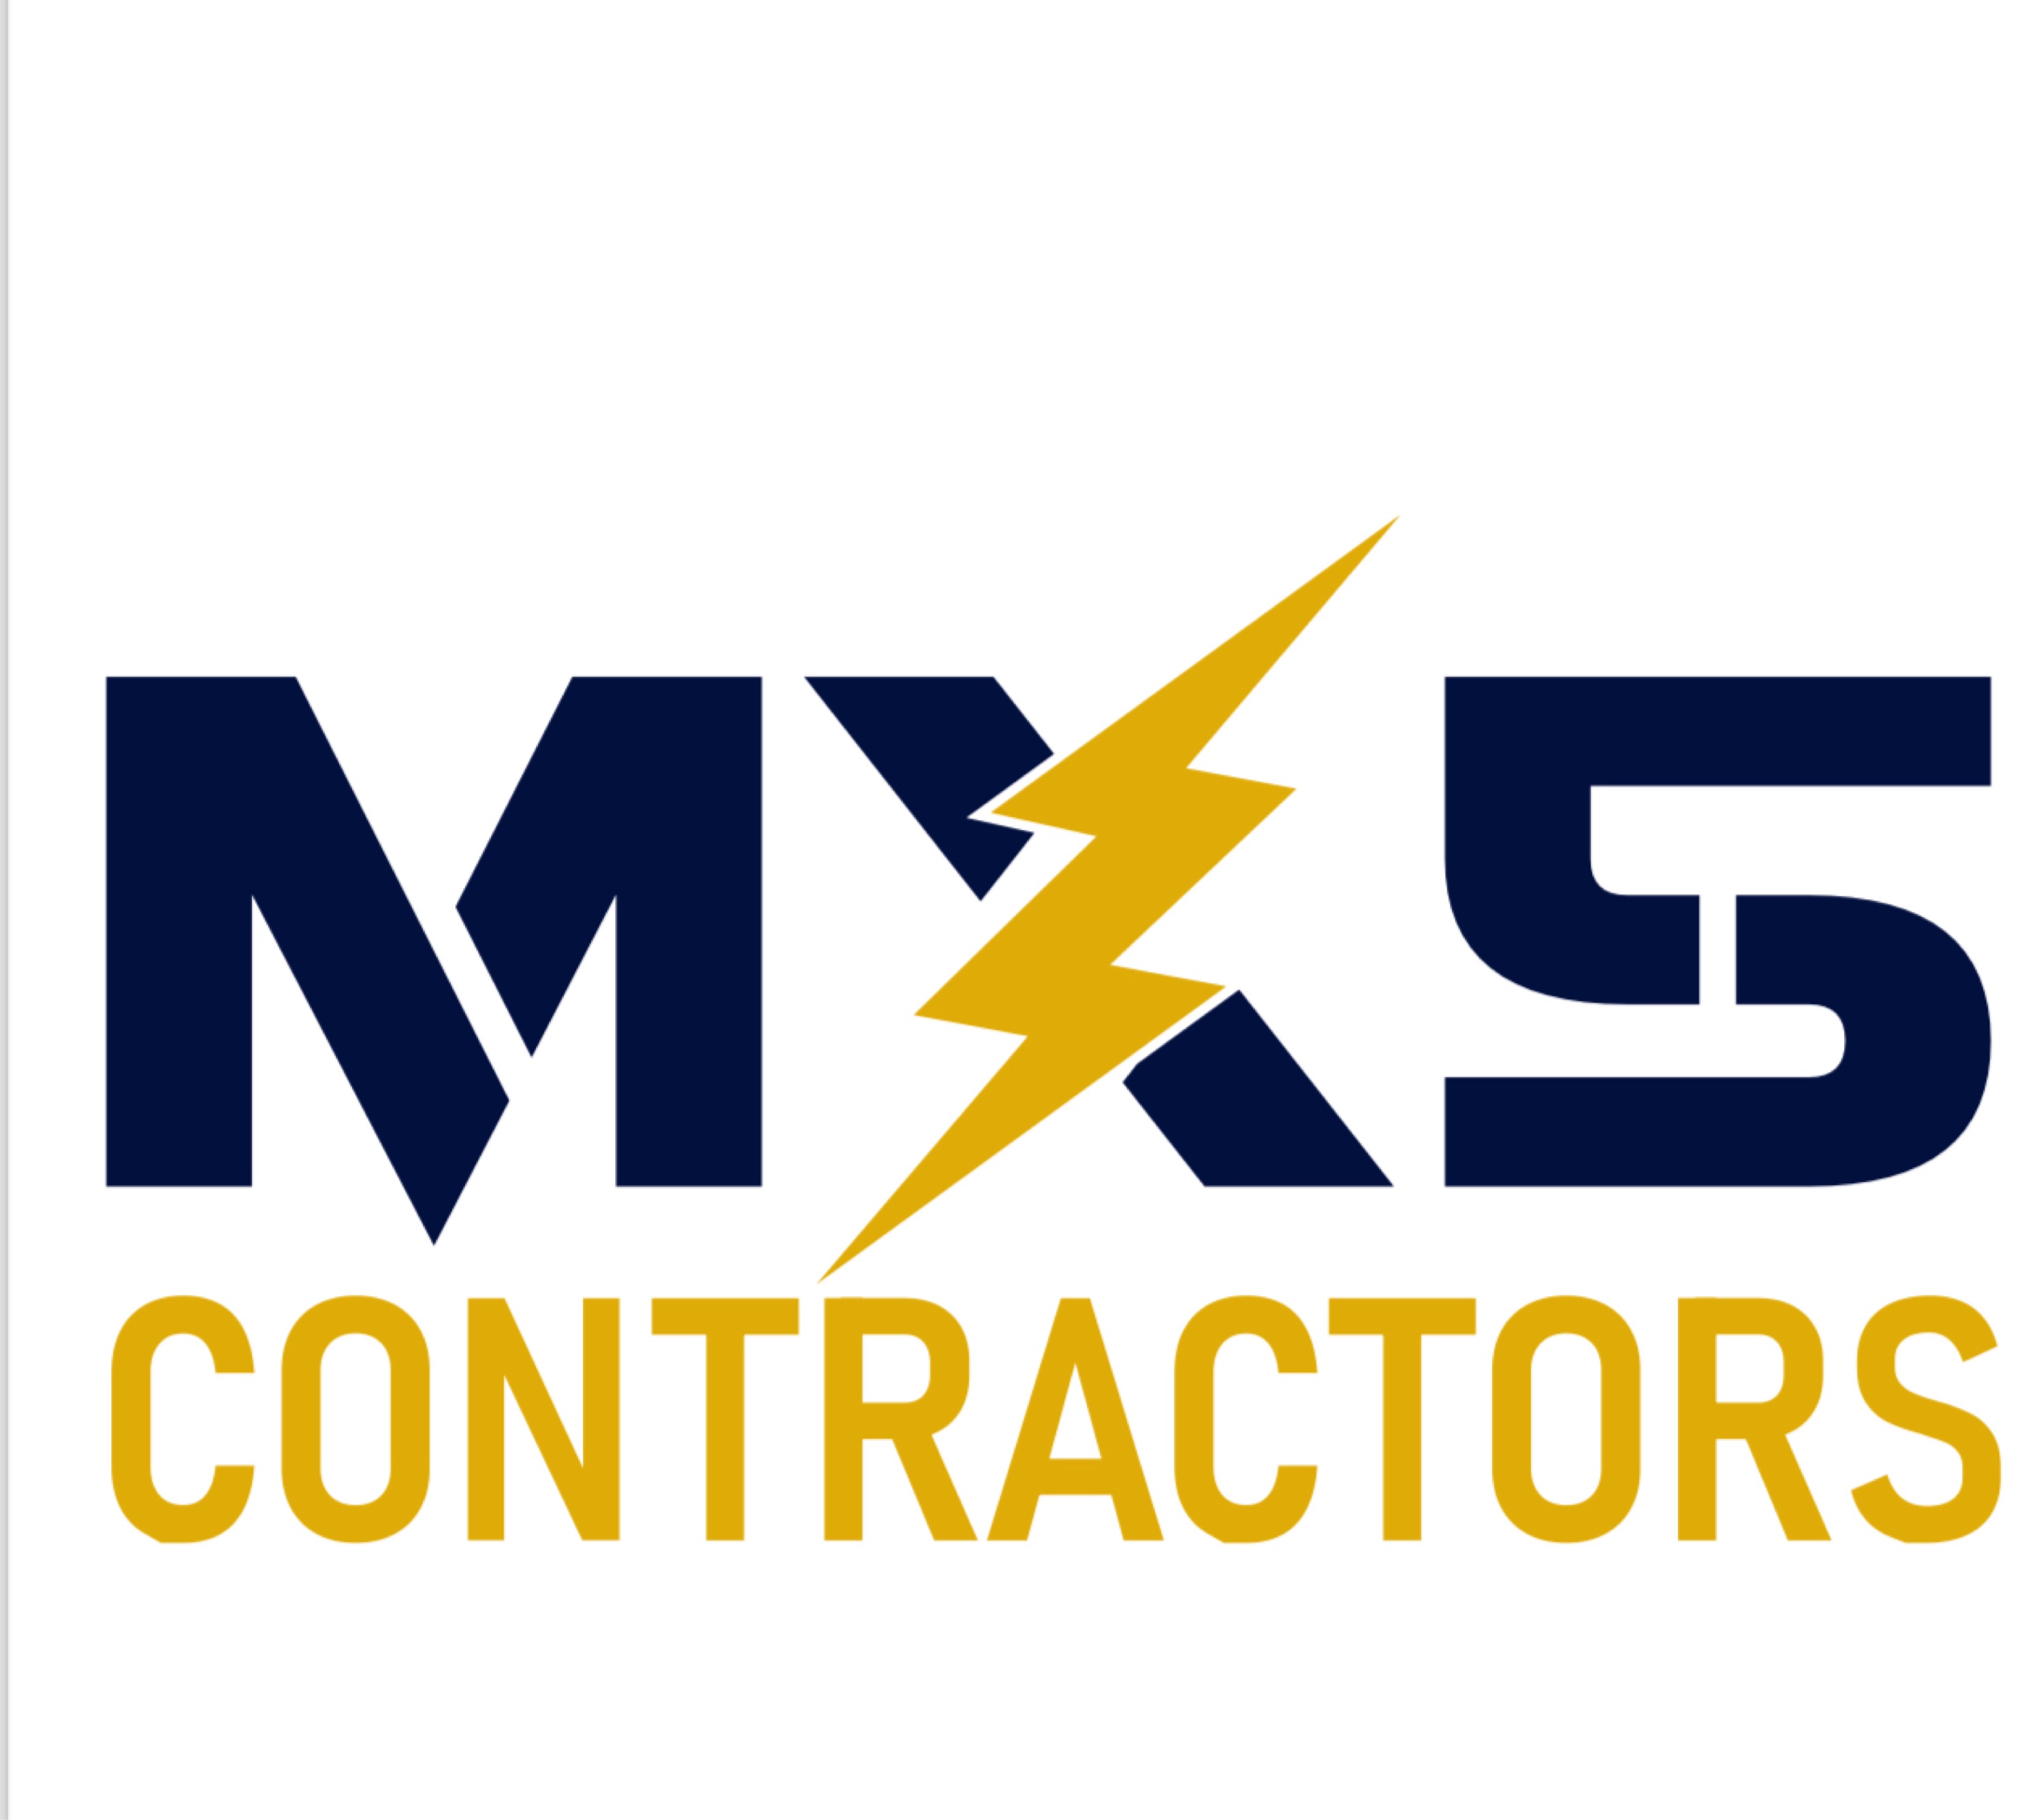 MX5 CONTRACTORS LLC Logo